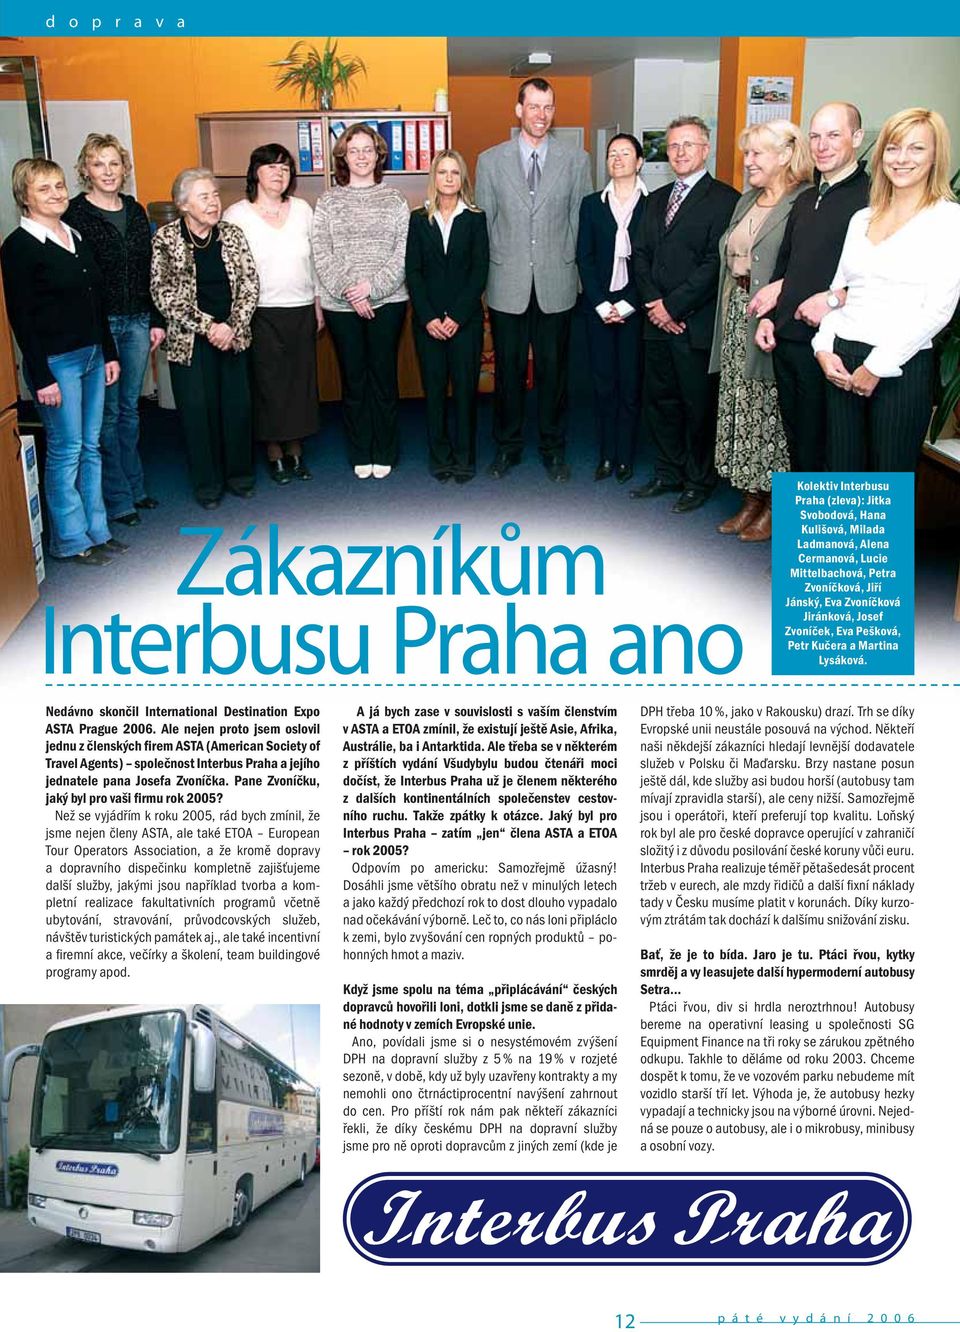 Ale nejen proto jsem oslovil jednu z členských firem ASTA (American Society of Travel Agents) společnost Interbus Praha a jejího jednatele pana Josefa Zvoníčka.